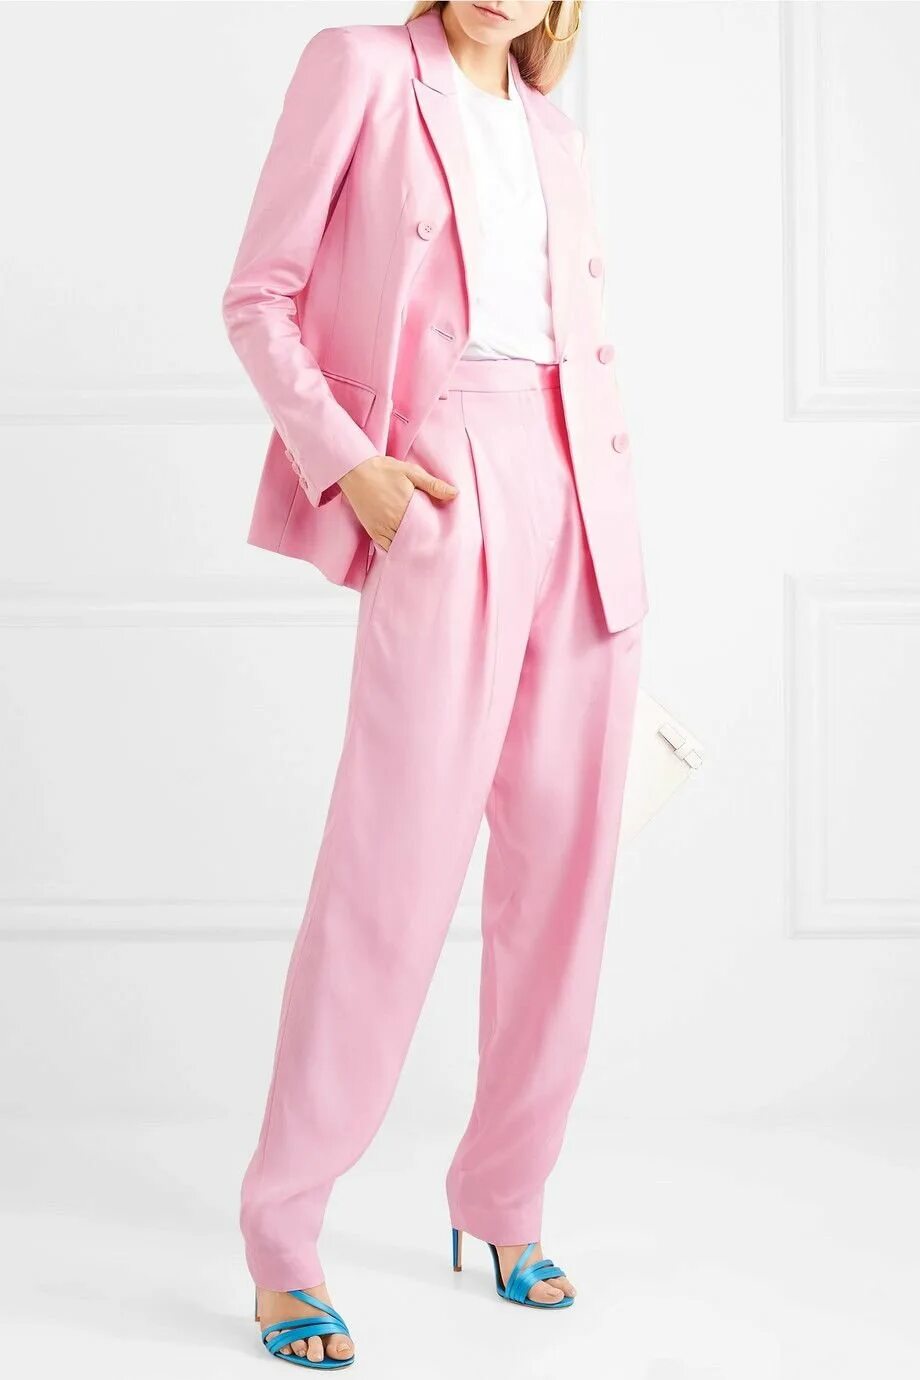 Розовая женская. Розовый брючный костюм женский. Розовый костюм жирокий. Розовый. Розовый костюм женский классический.